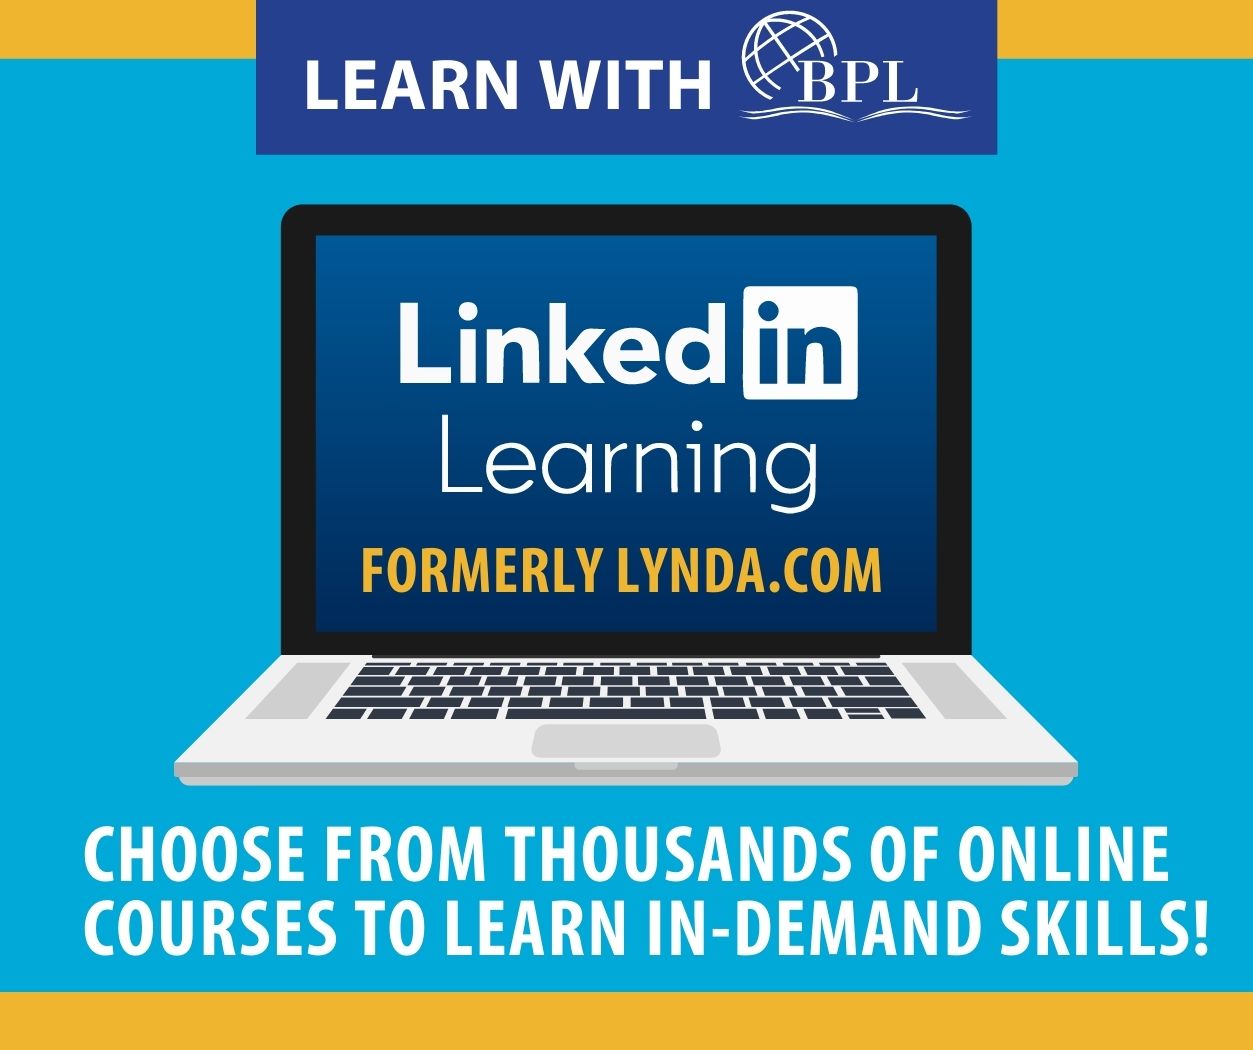 Learn new skills with LinkedIn learning, formerly Lynda.com